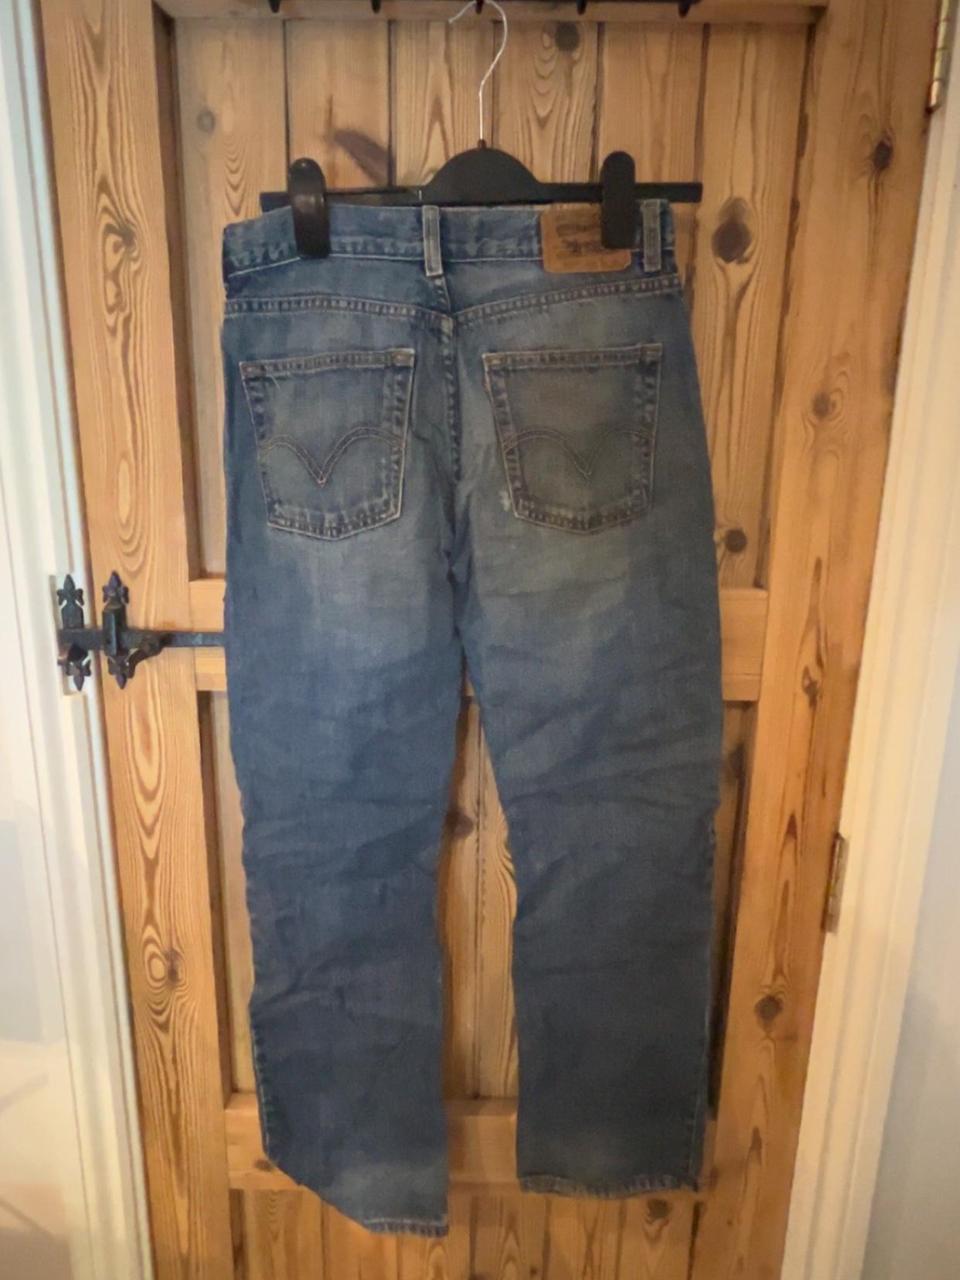 levi’s jeans worn old / vintage look will negotiate... - Depop